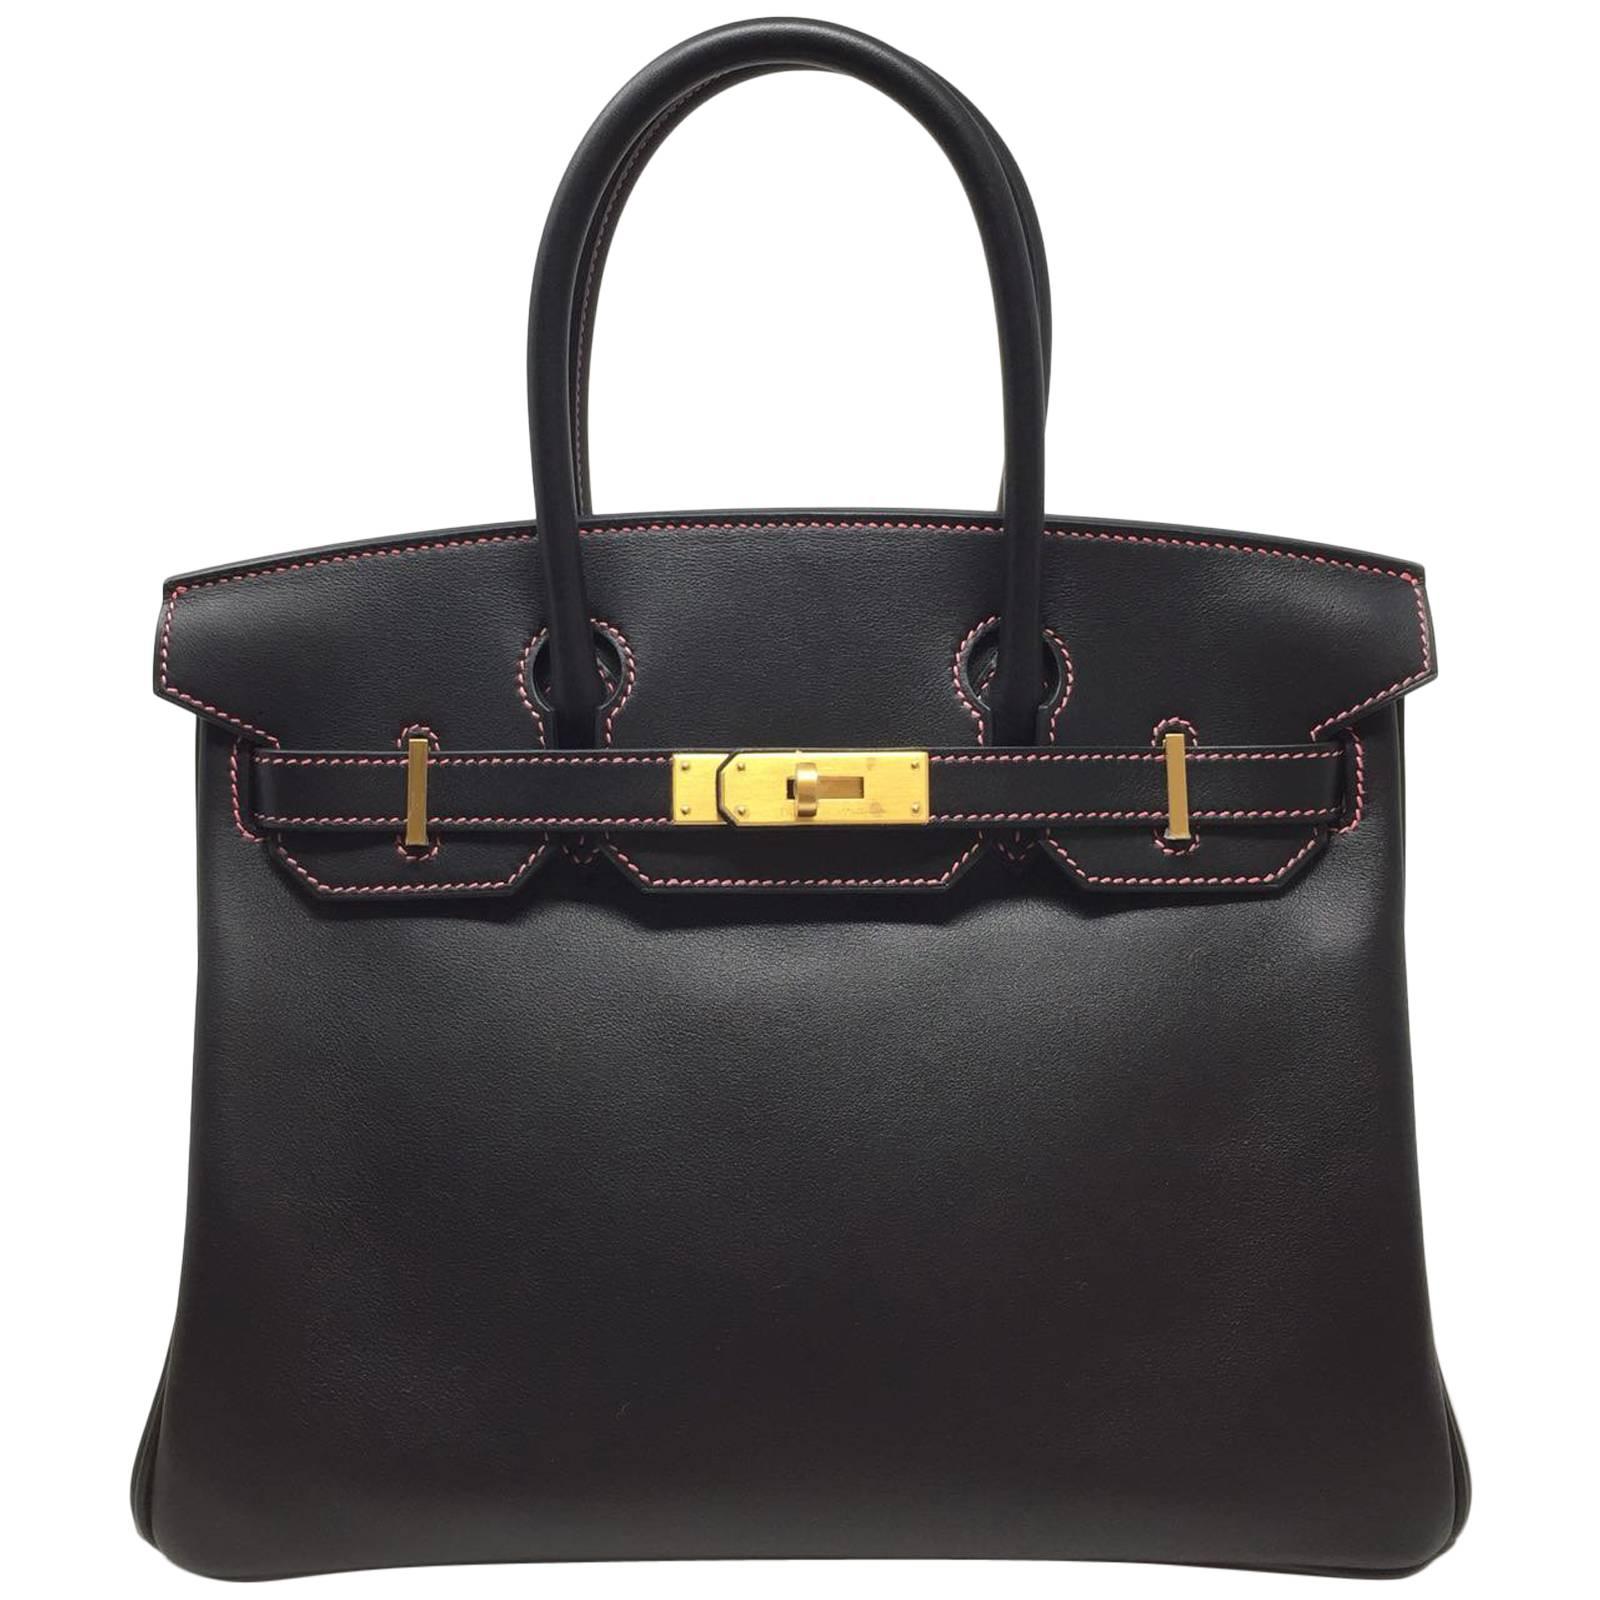 Hermes Black and Rose Azalee Chevre Special Order Birkin 30 cm Bag, 2018 